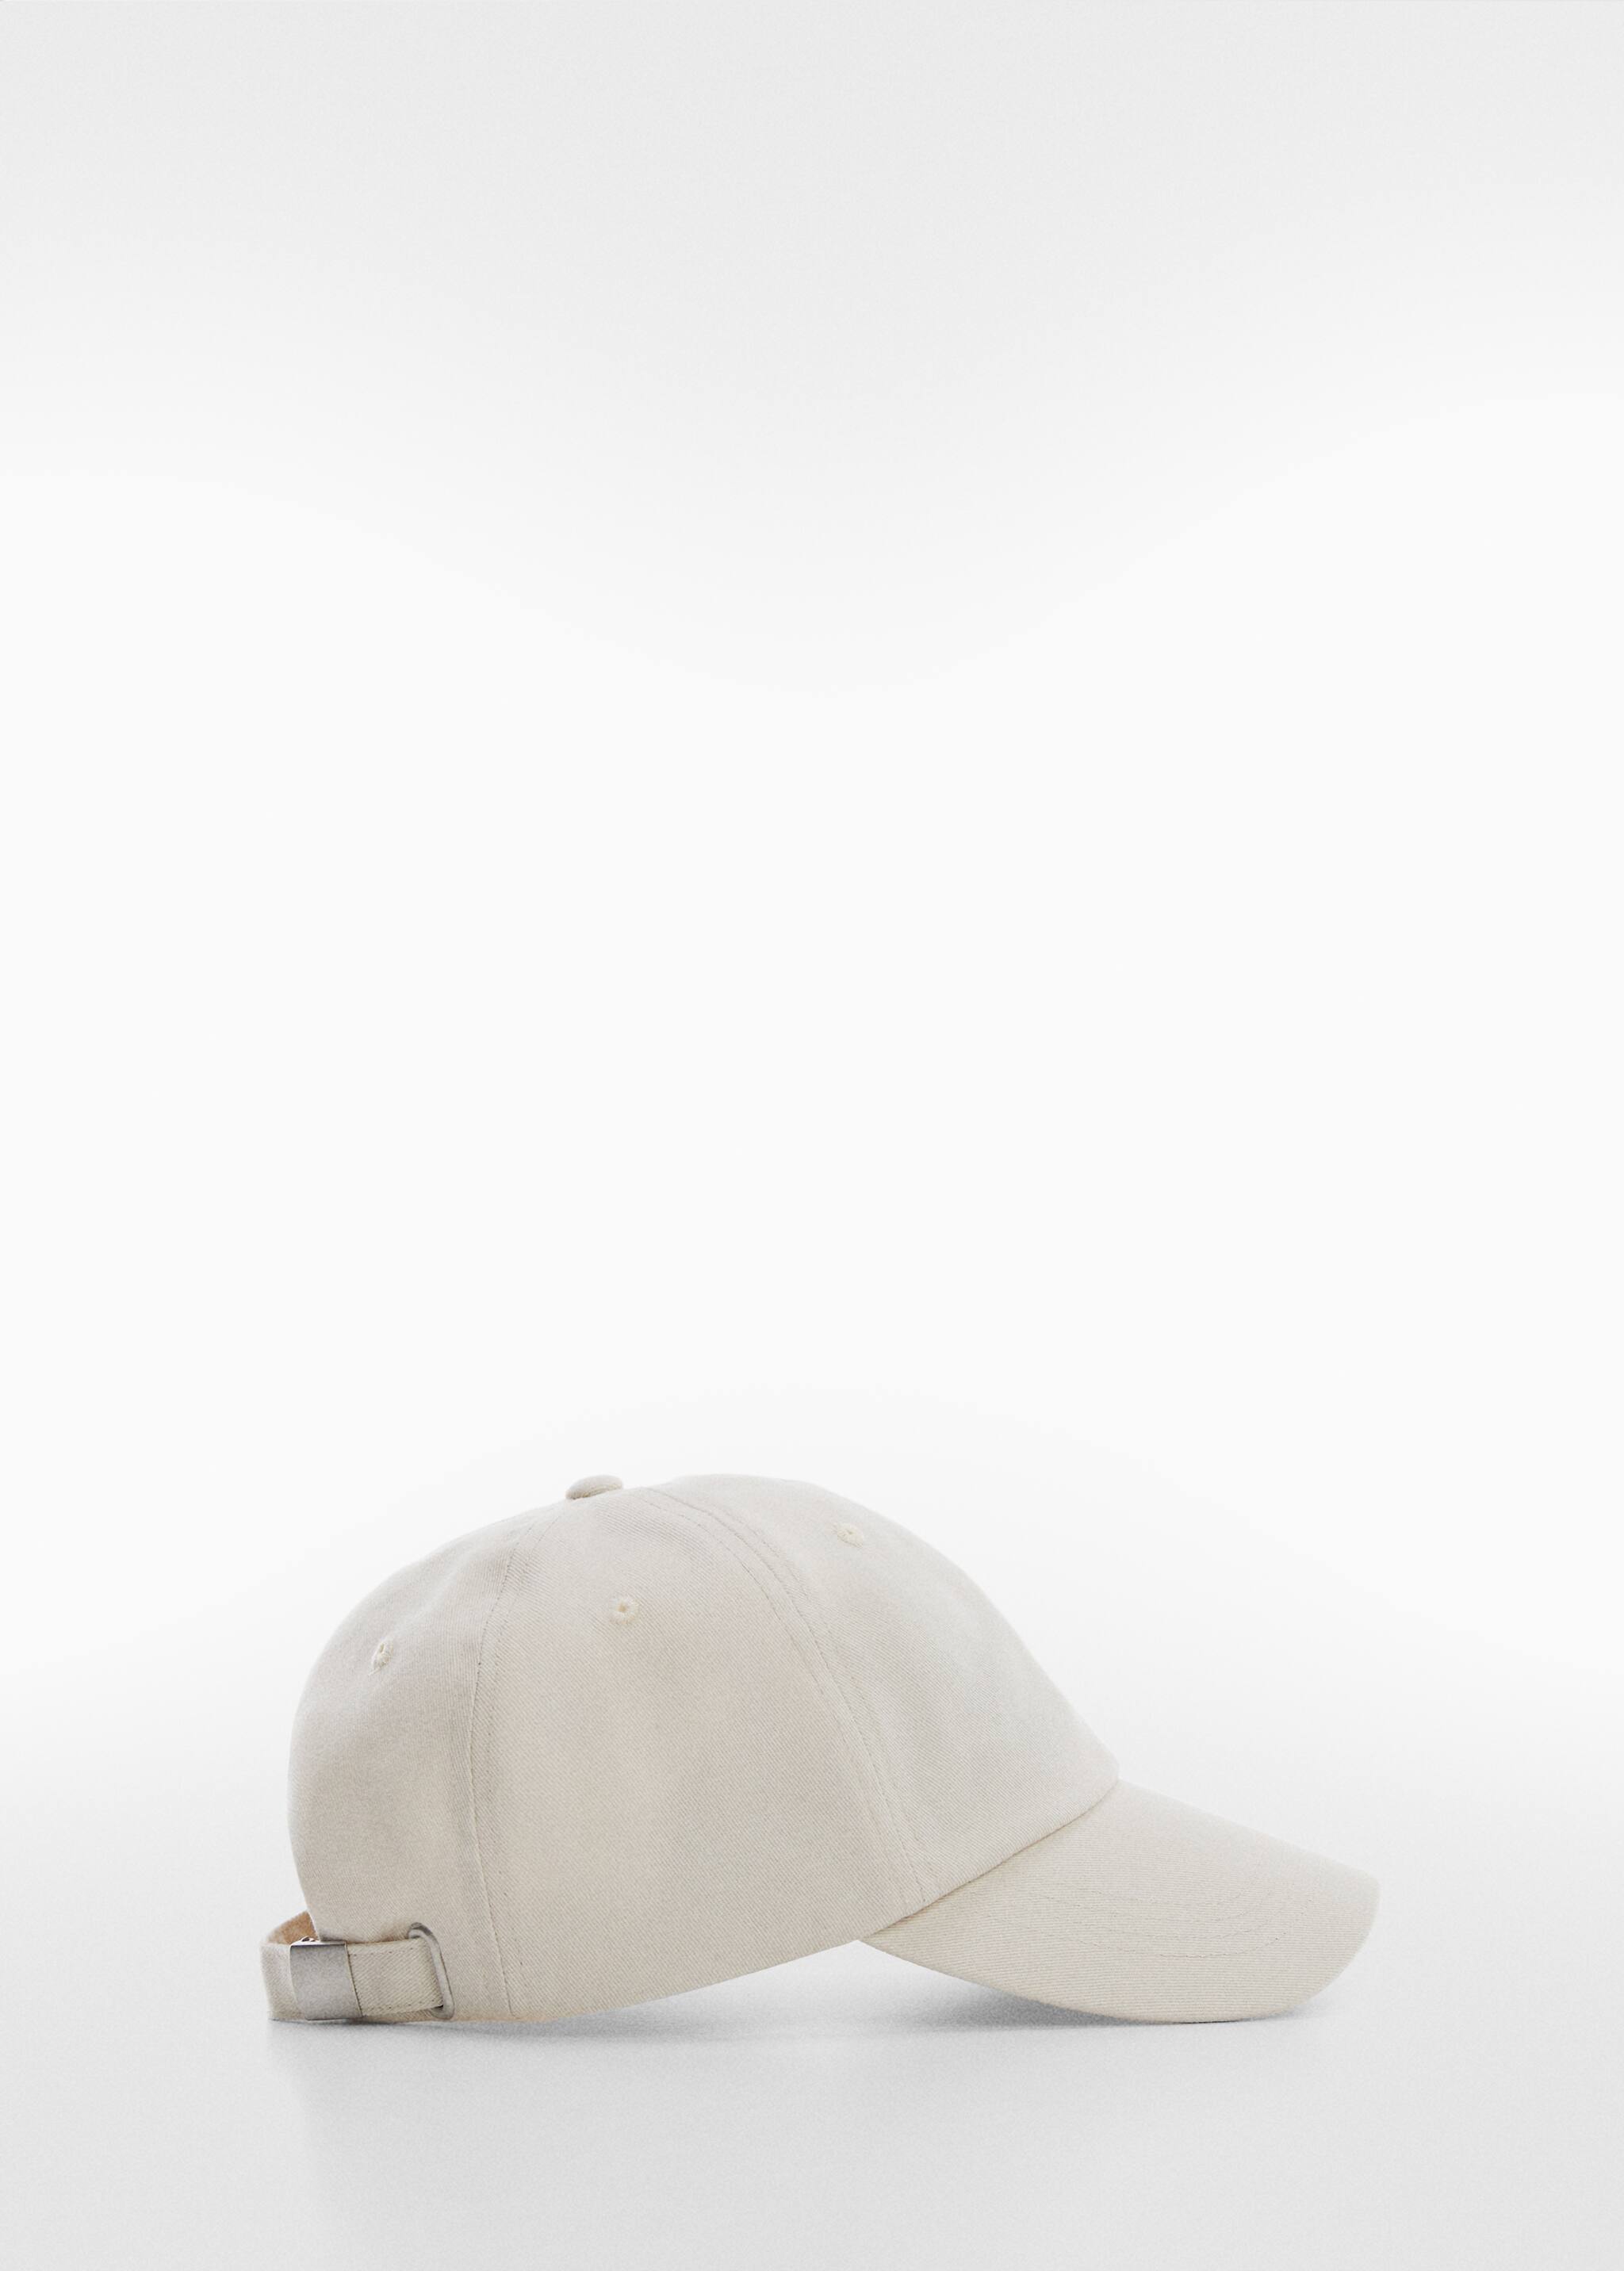 Gorra algodón bordado - Artículo sin modelo